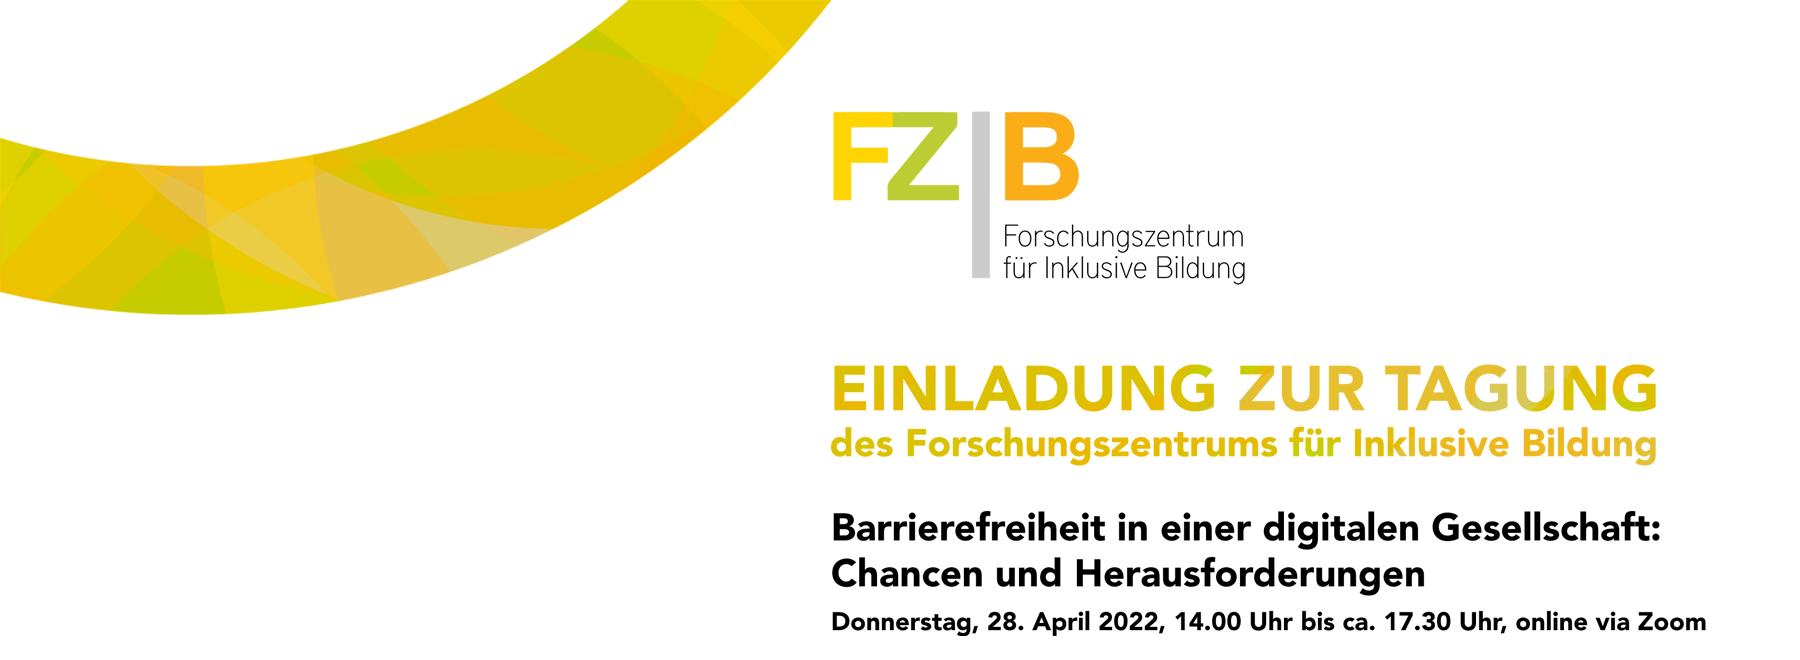 Tagung FZIB Barrierefreiheit in einer digitalen Gesellschaft